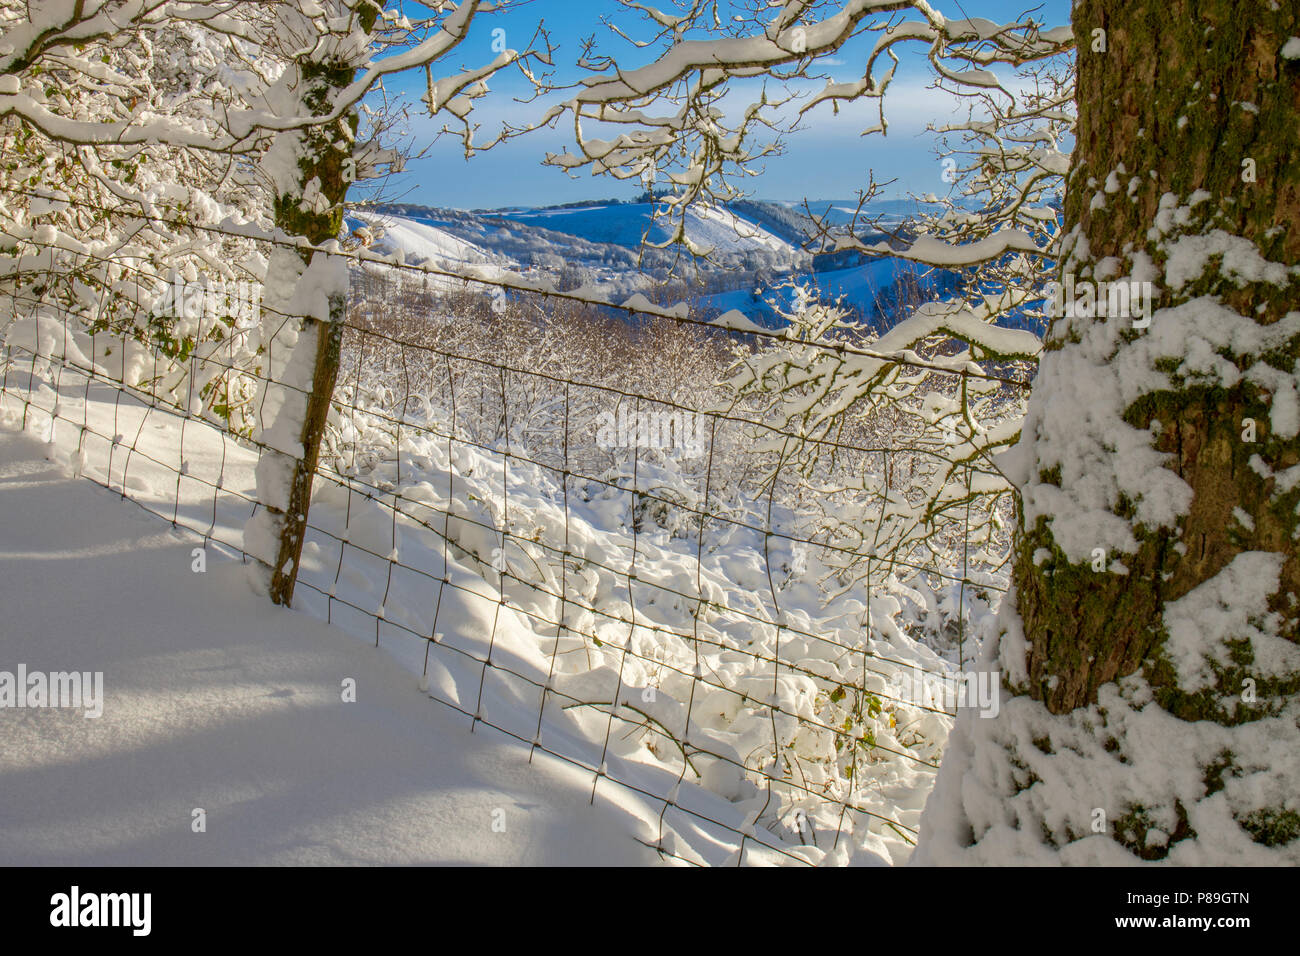 Zaun am Rand des Waldes nach einem schweren Sturz von Schnee. Powys, Wales. Dezember. Stockfoto